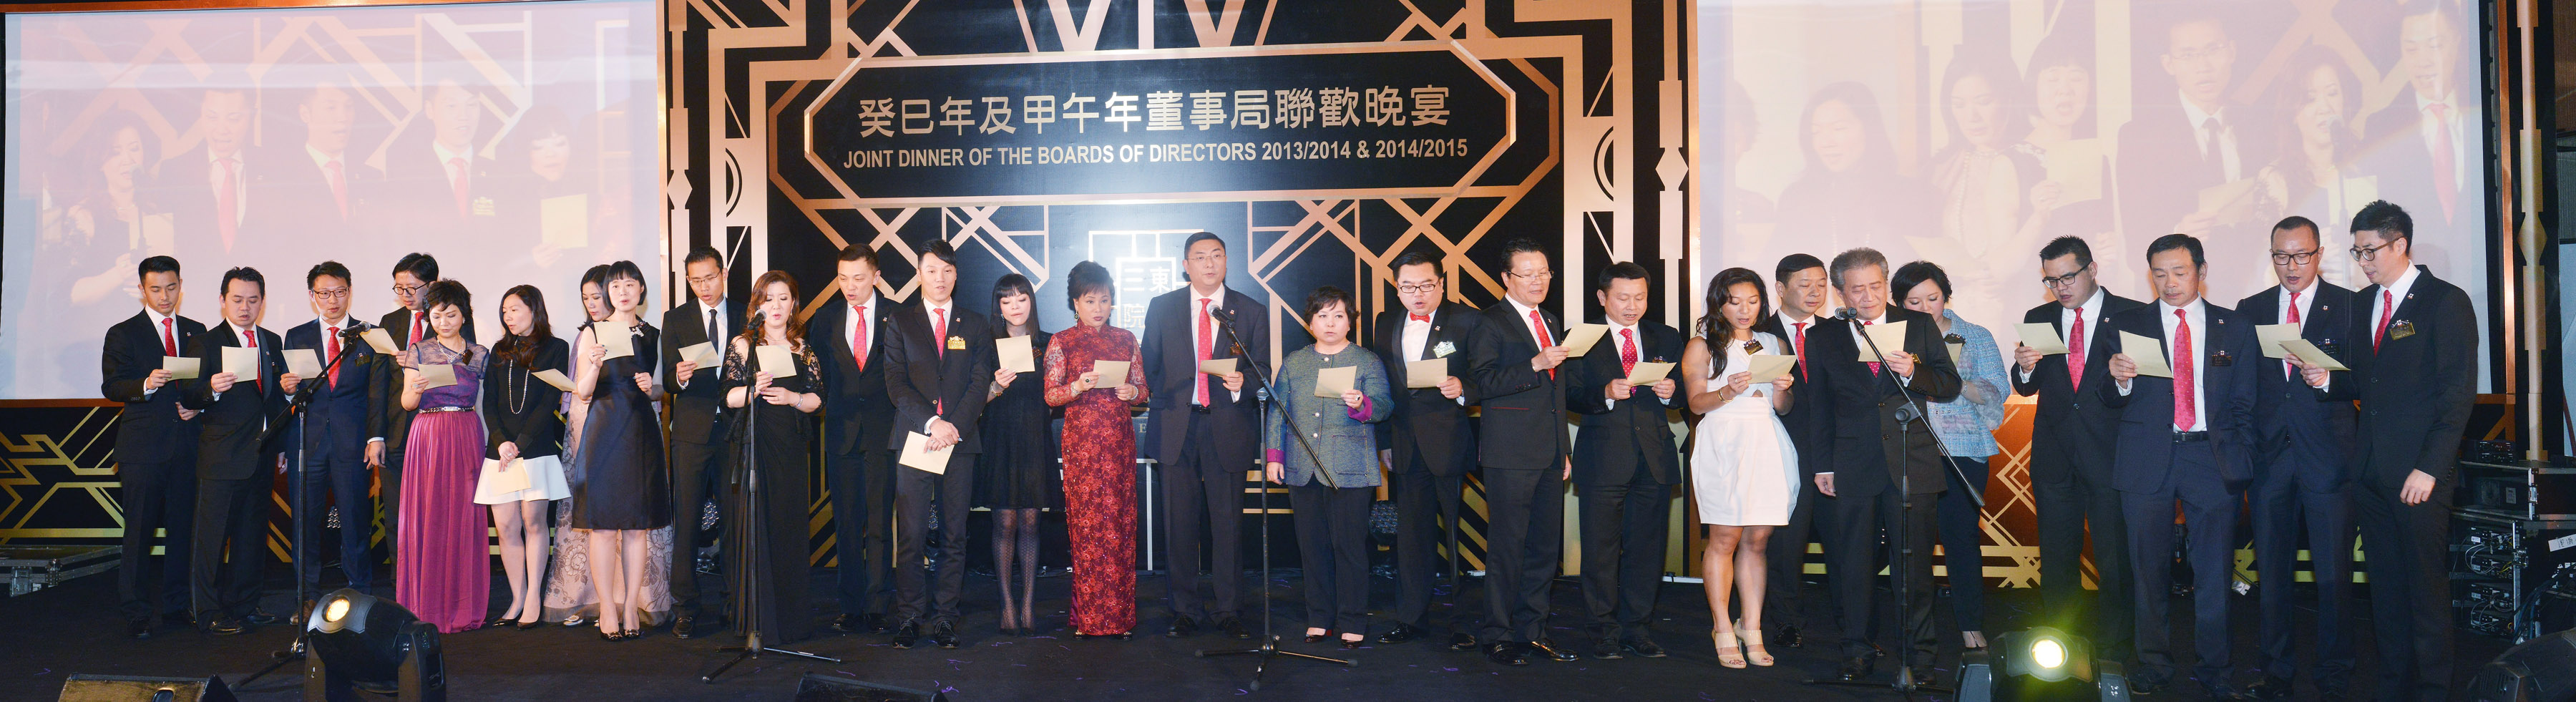 两届董事局成员齐唱「东华心」，彰显东华团队精神。